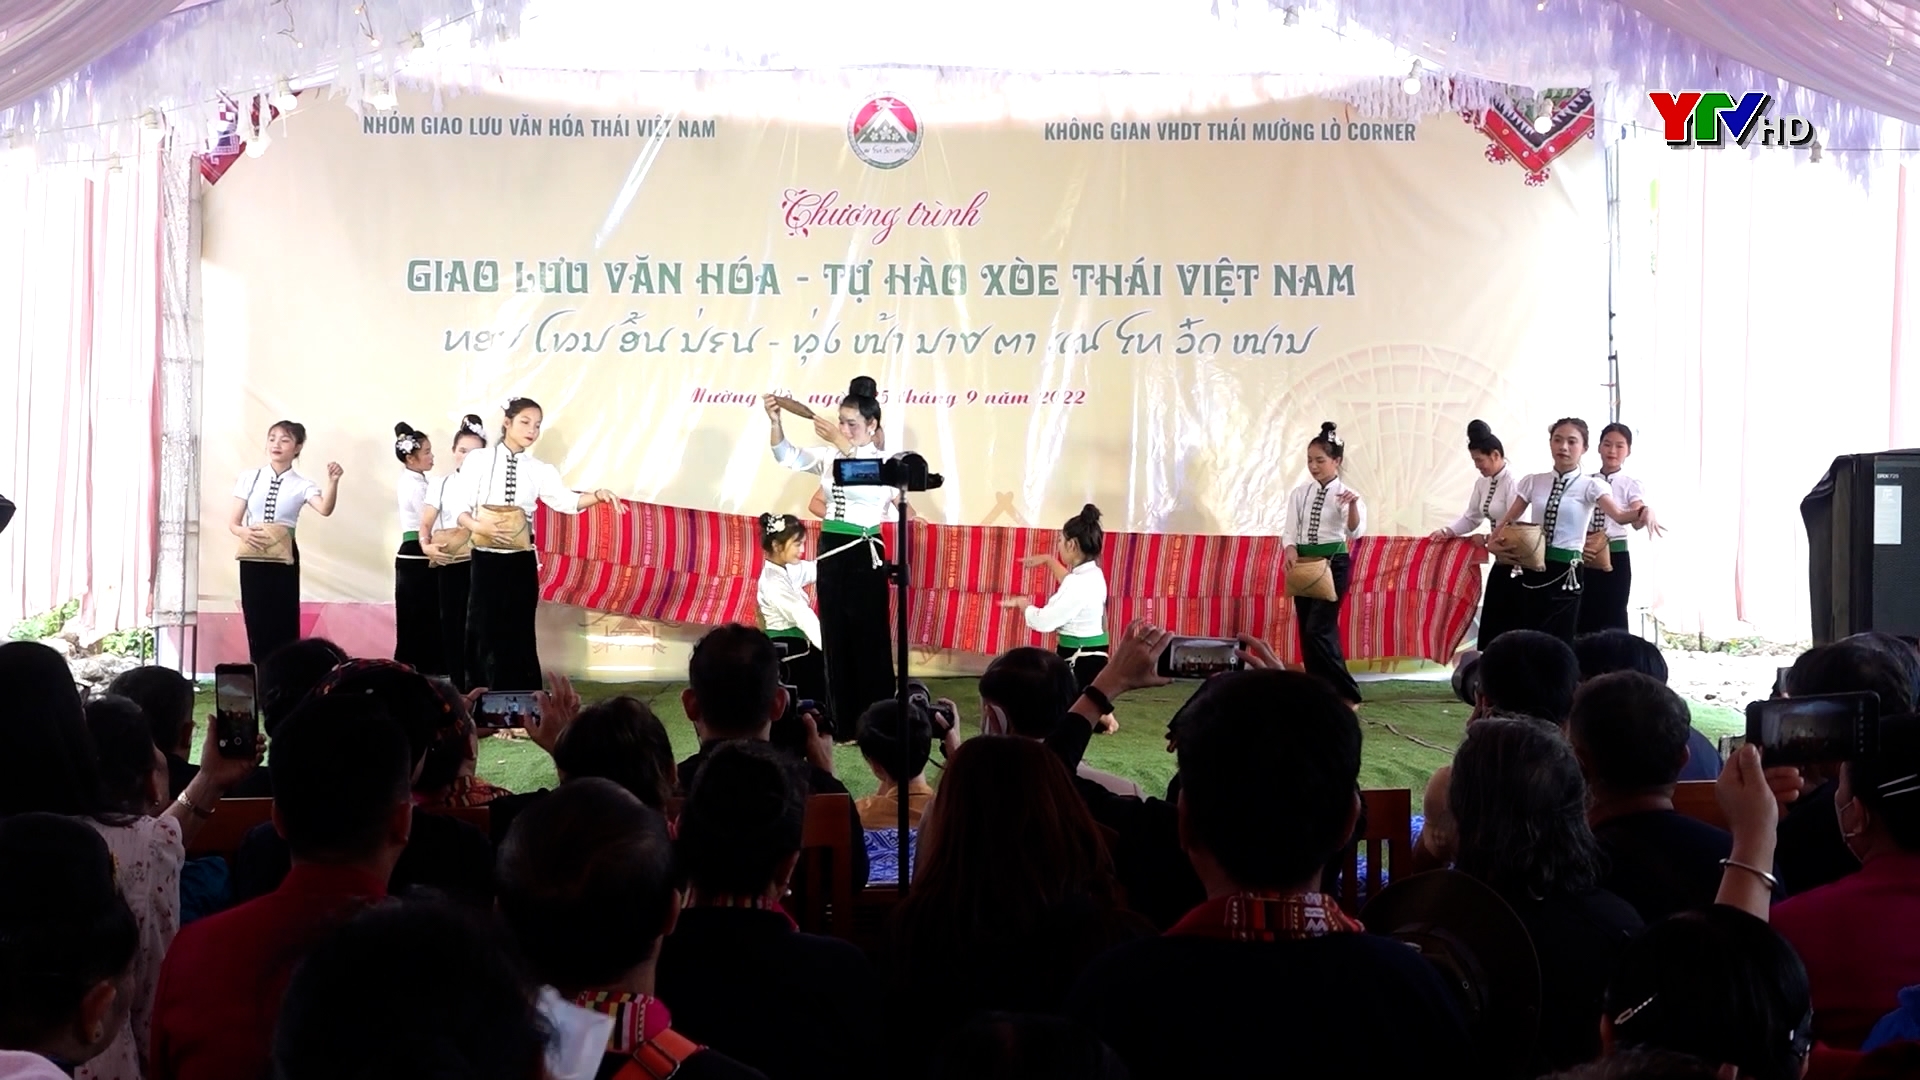 Giao lưu văn hoá  “Tự hào xoè Thái Việt Nam”